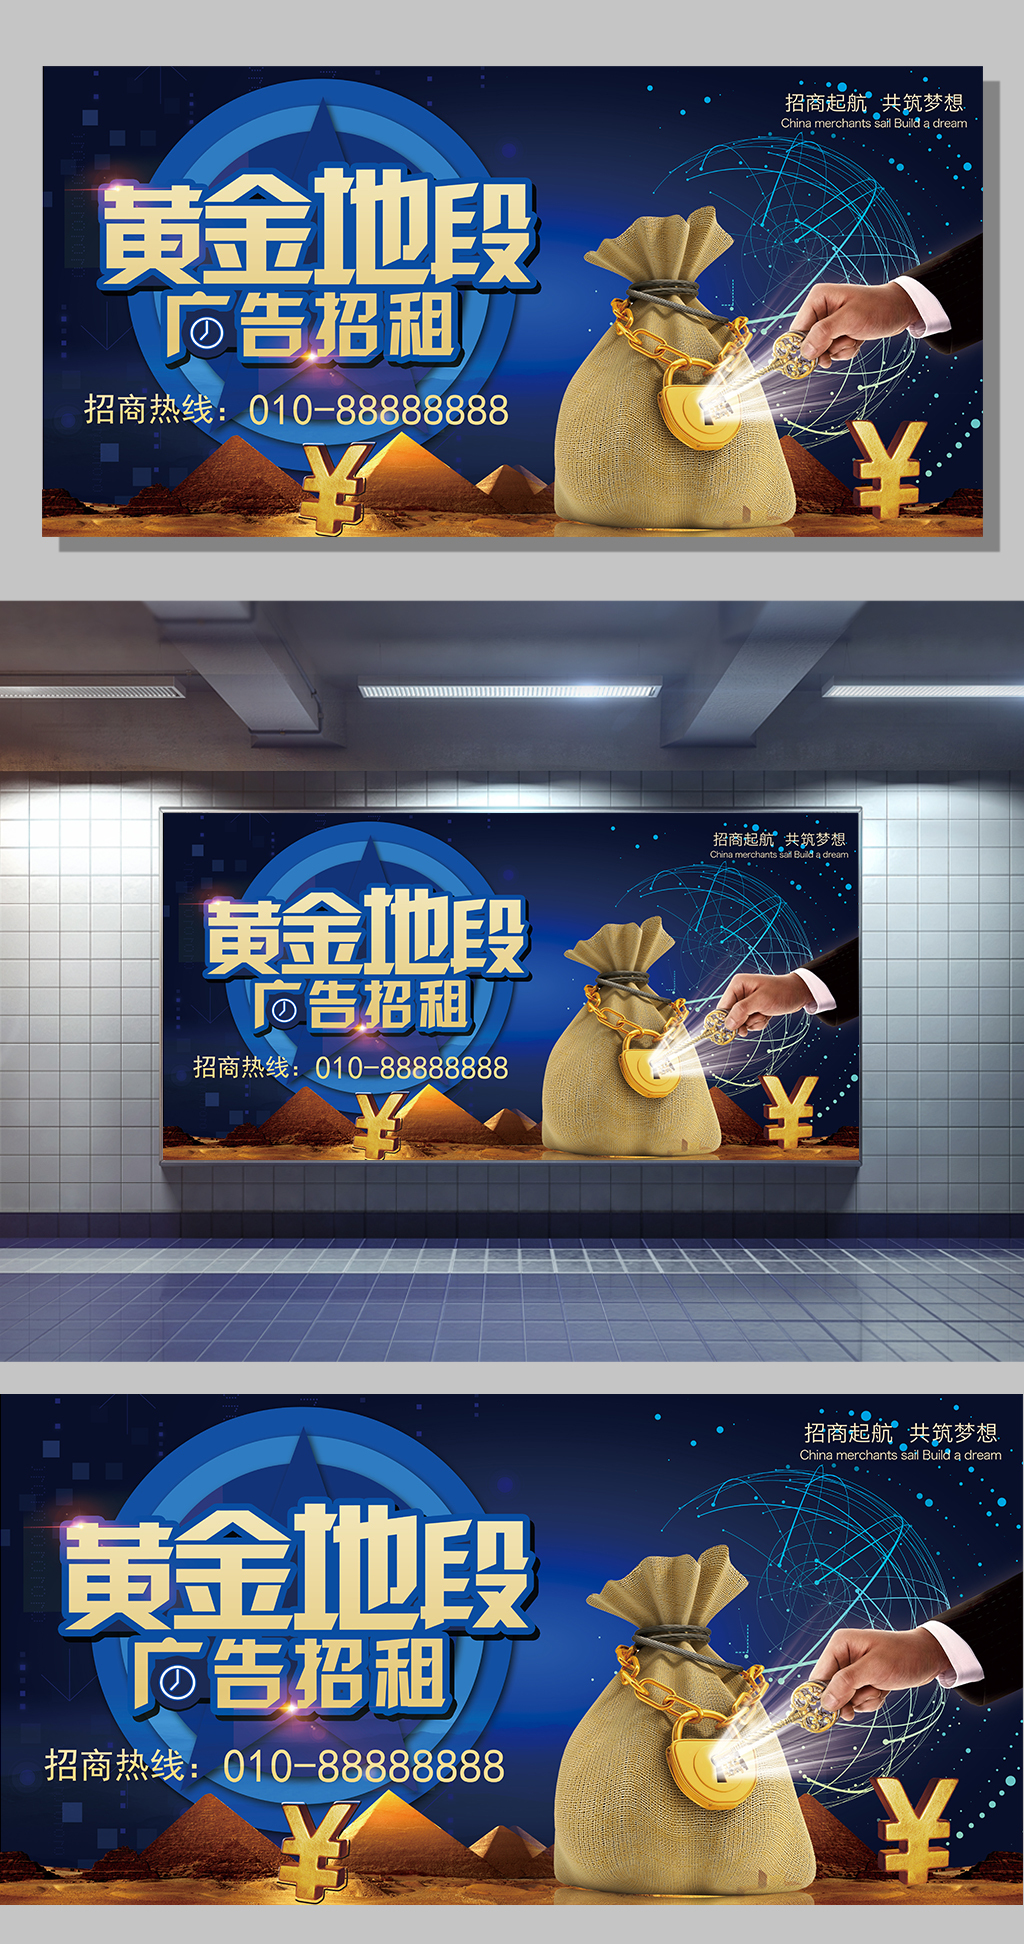 2017蓝色高端黄金段广告位招租招商宣传展板模板图片